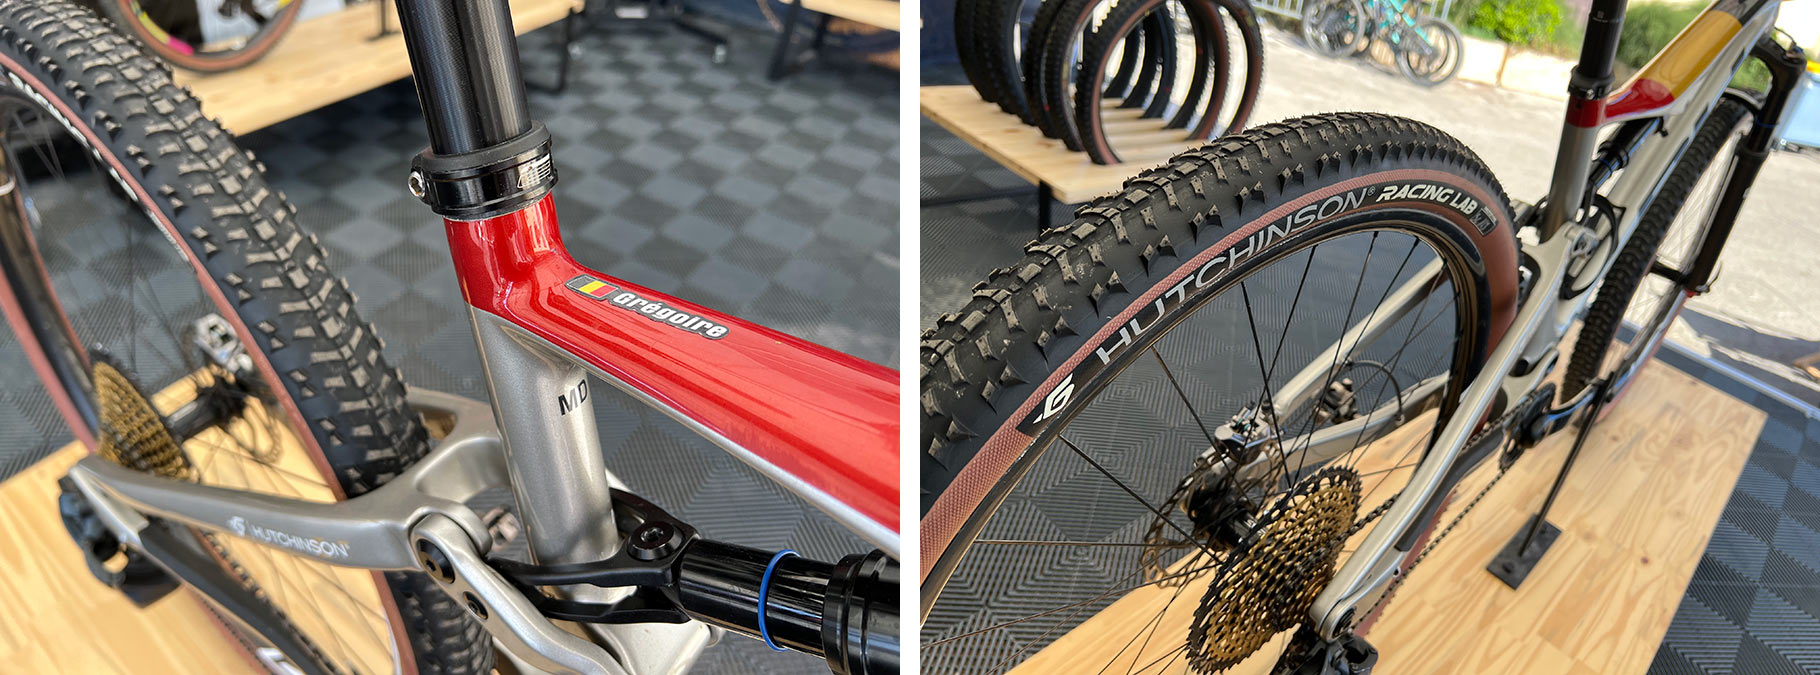 prototype hutchinson skeleton and kraken XC mountain bike tires